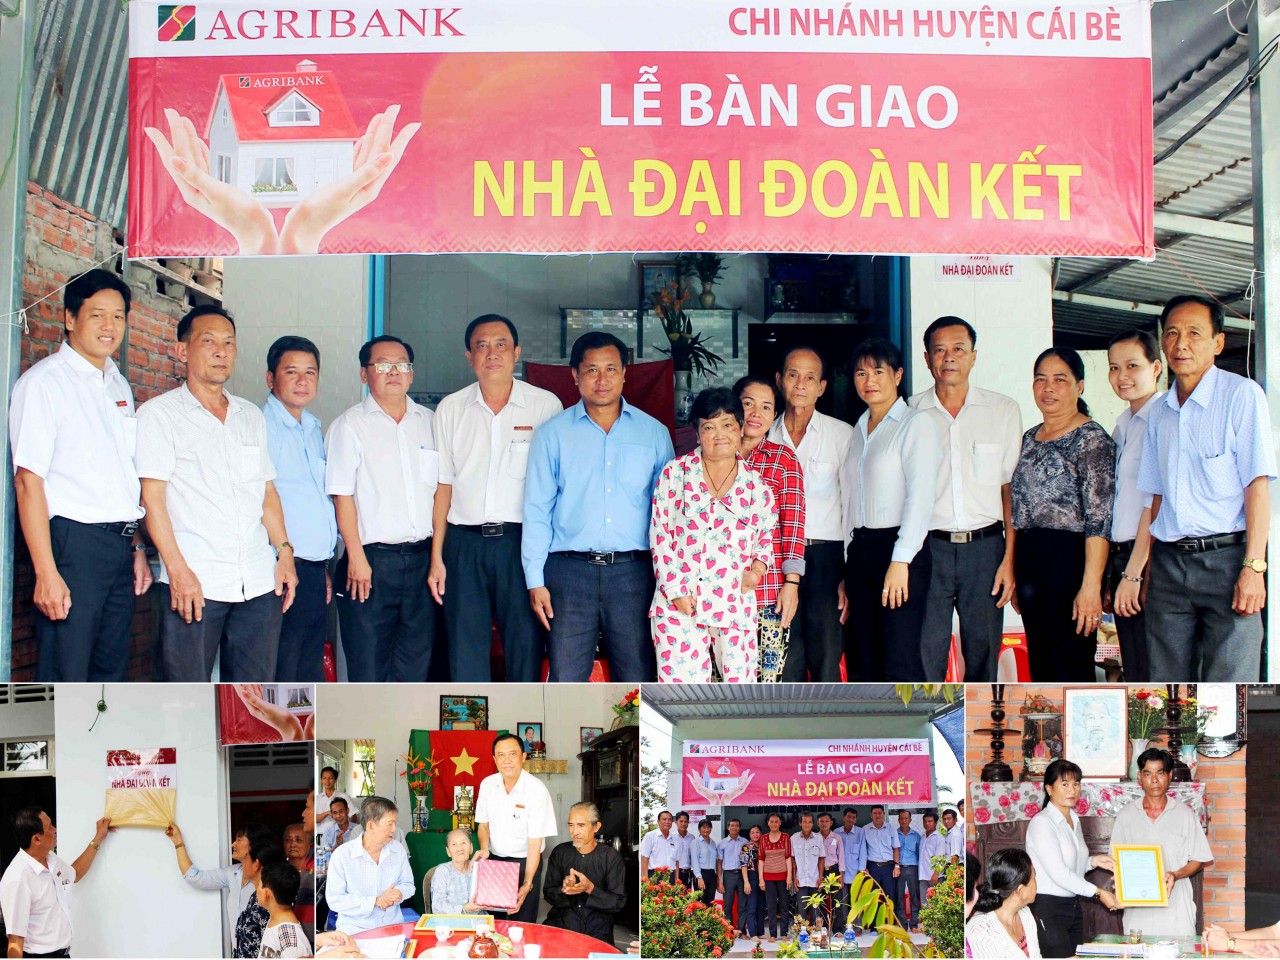 Tiền Giang: Agribank huyện Cái Bè hỗ trợ 5 gia đình an cư để lạc nghiệp